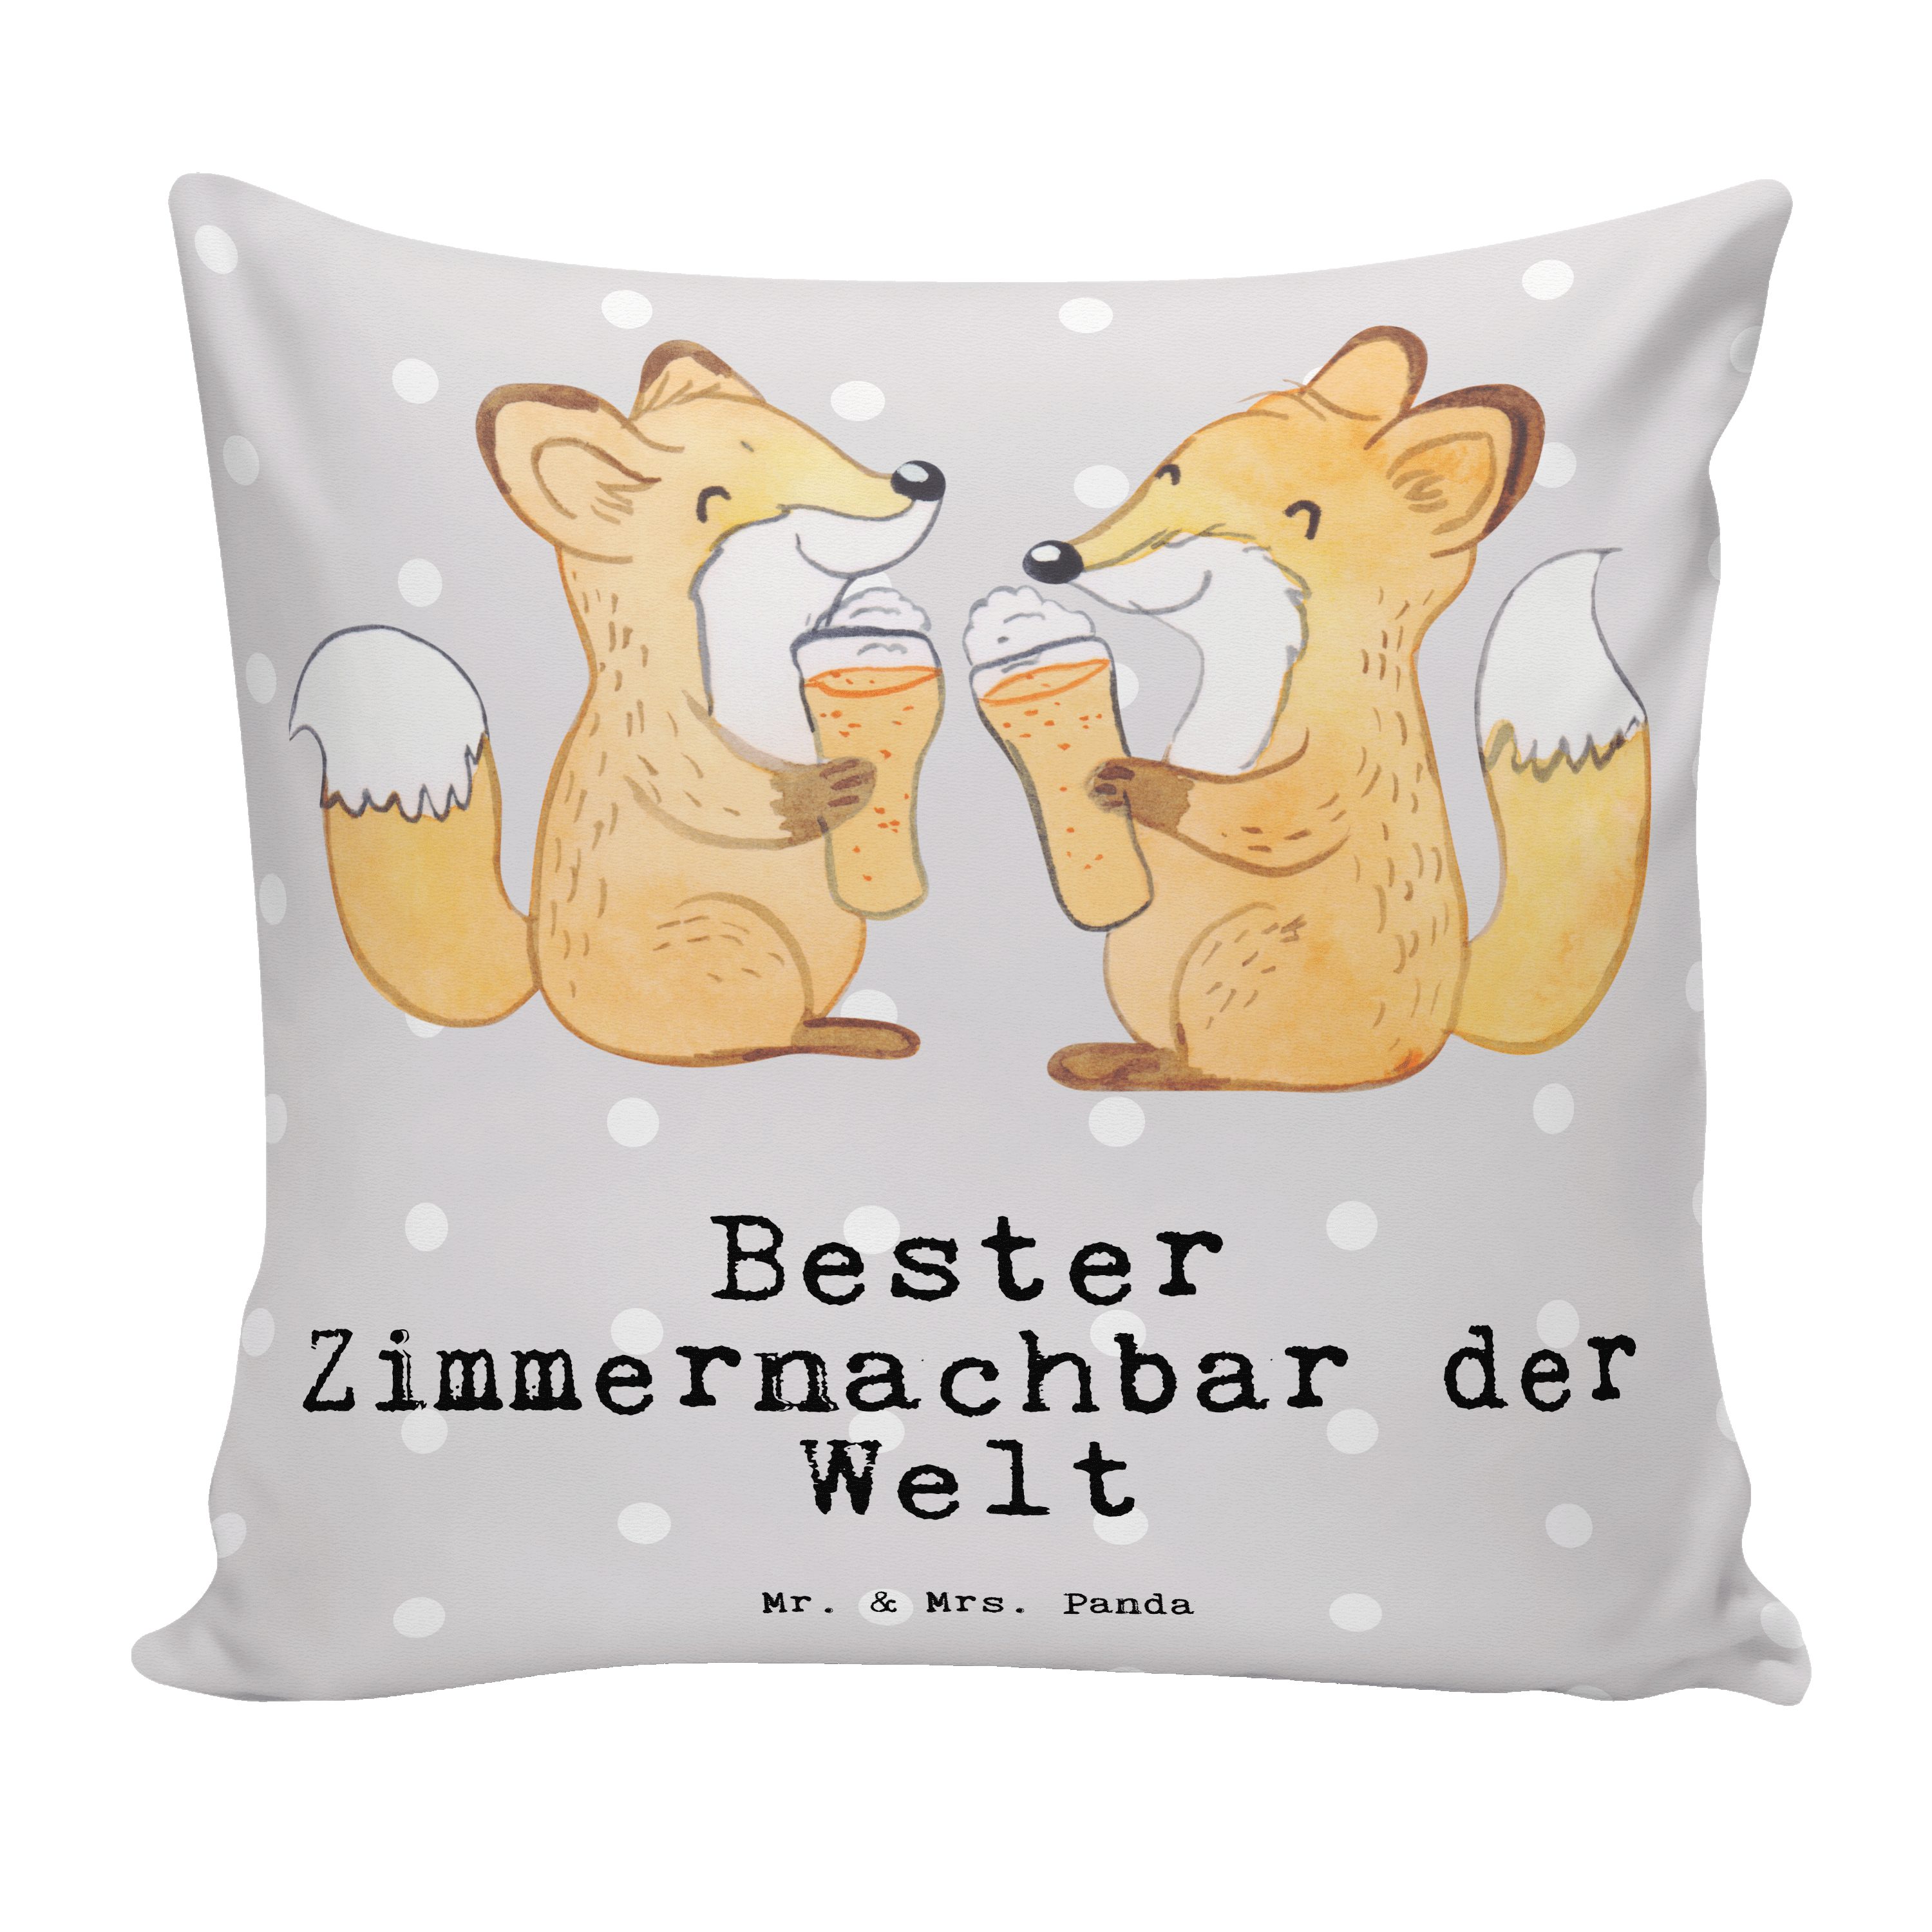 Mr. & Mrs. Panda Dekokissen Fuchs Bester Zimmernachbar der Welt - Grau Pastell - Geschenk, Wohnhe